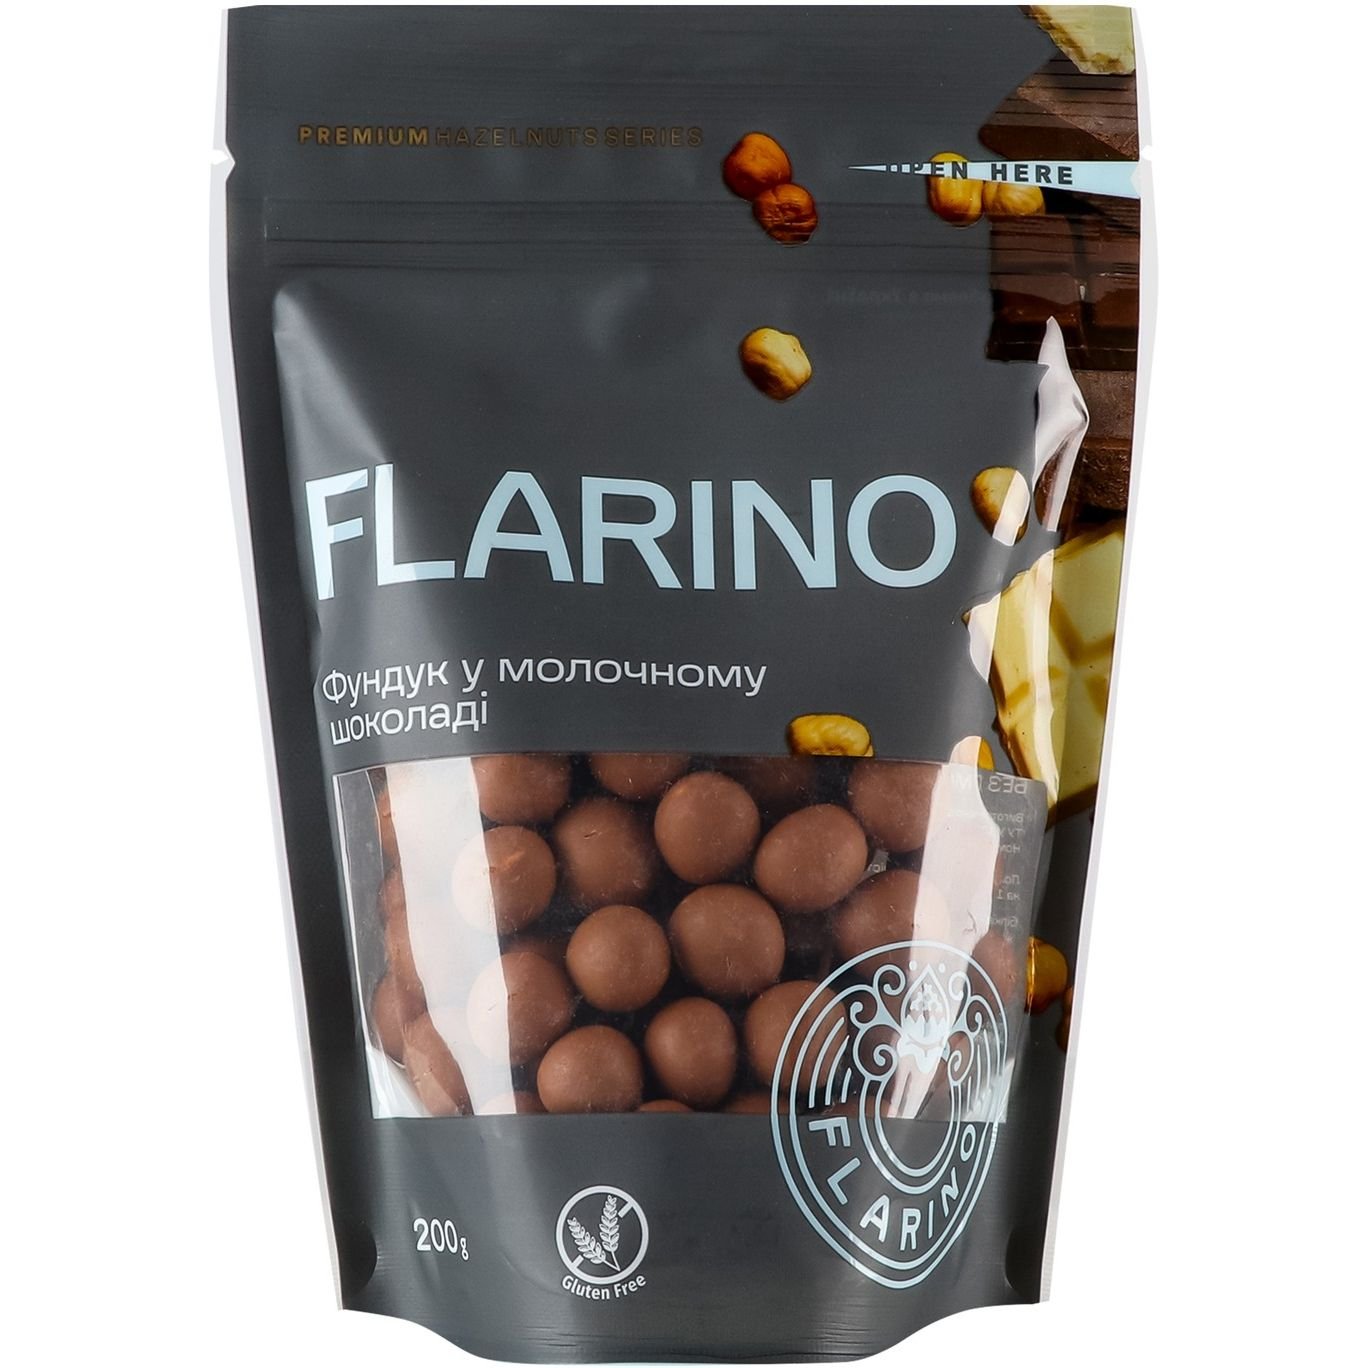 Фундук Flarino смажений у молочному шоколаді, 200 г (923103) - фото 1